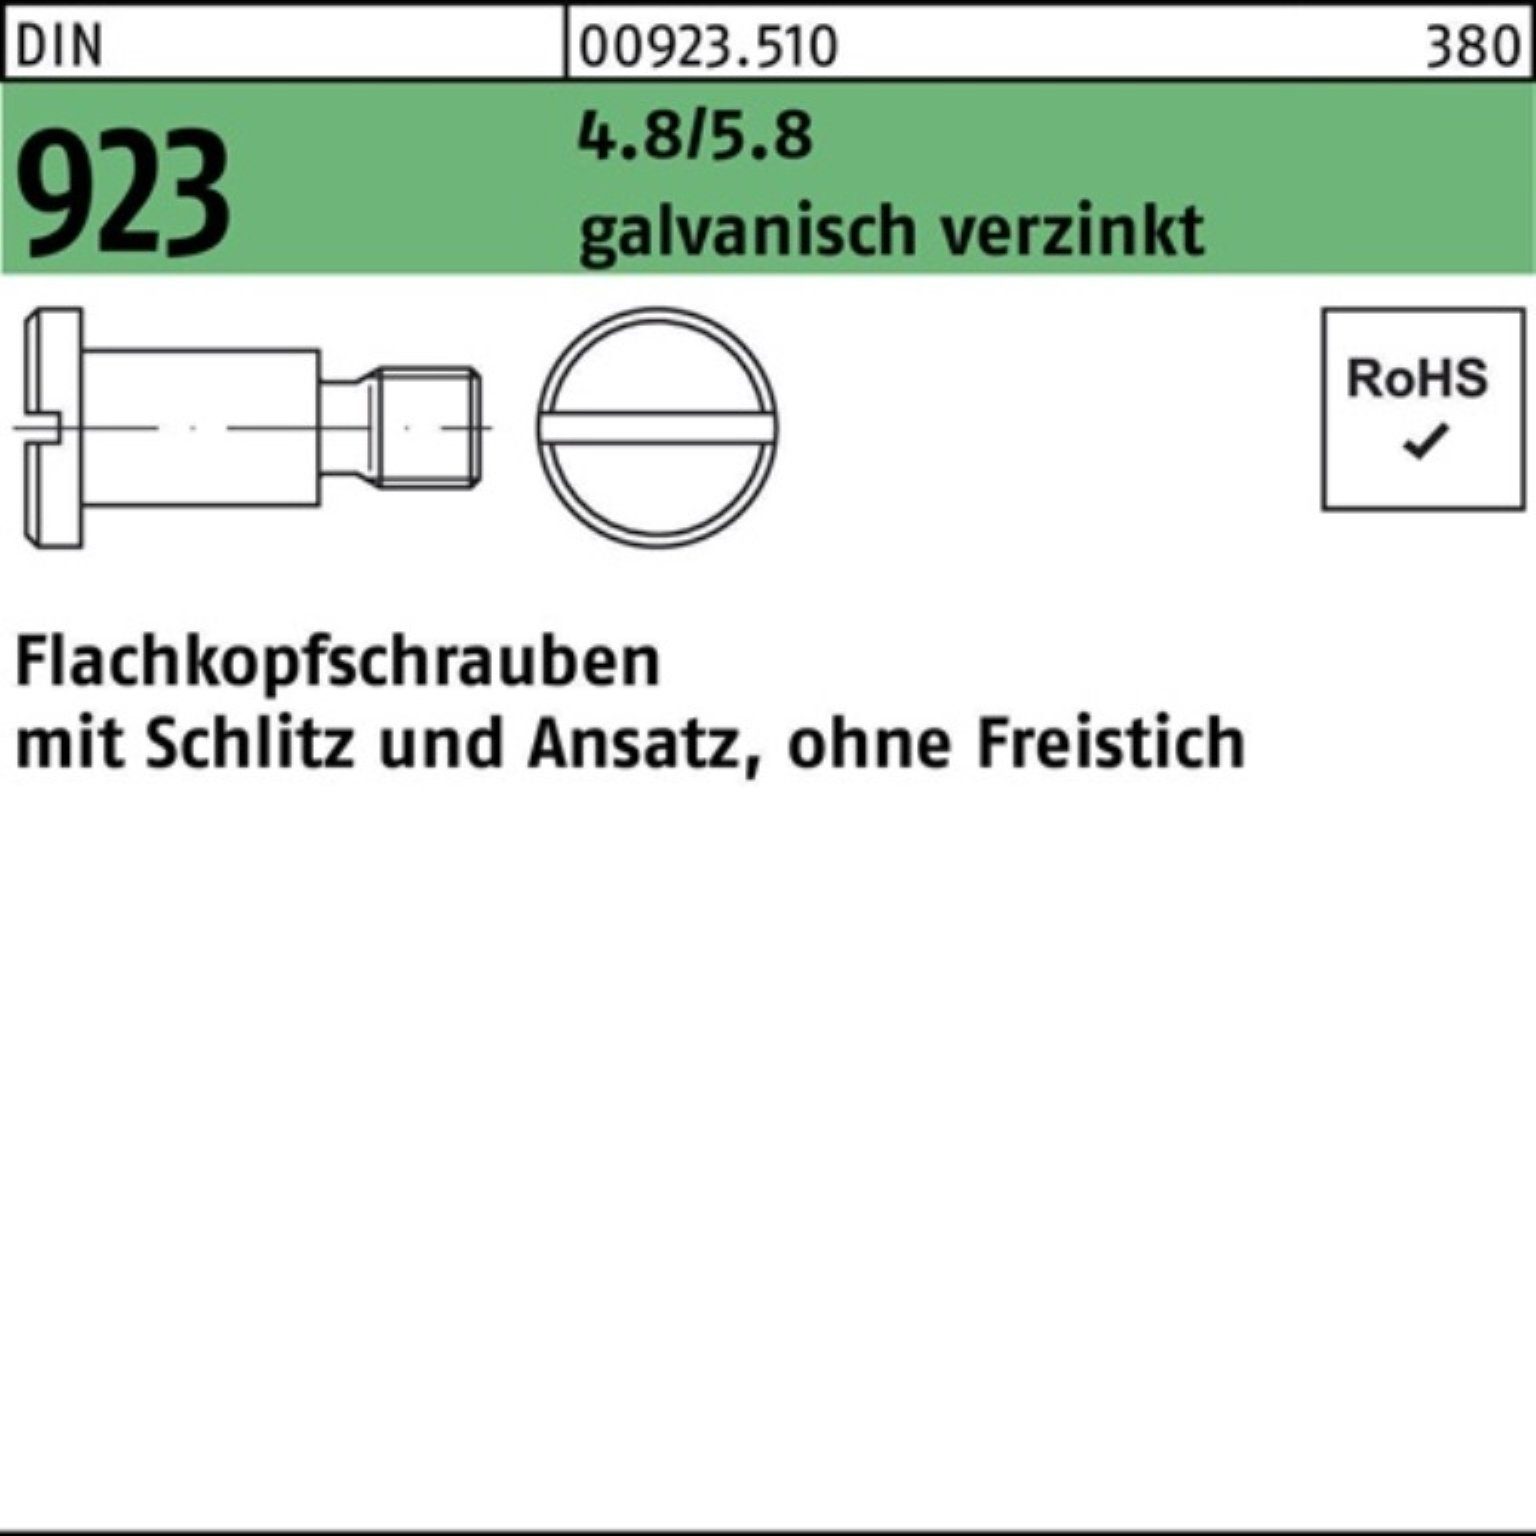 Reyher Schraube 100er Pack Flachkopfschraube DIN 923 Schlitz/Ansatz M8x25x11,0 4.8/5.8